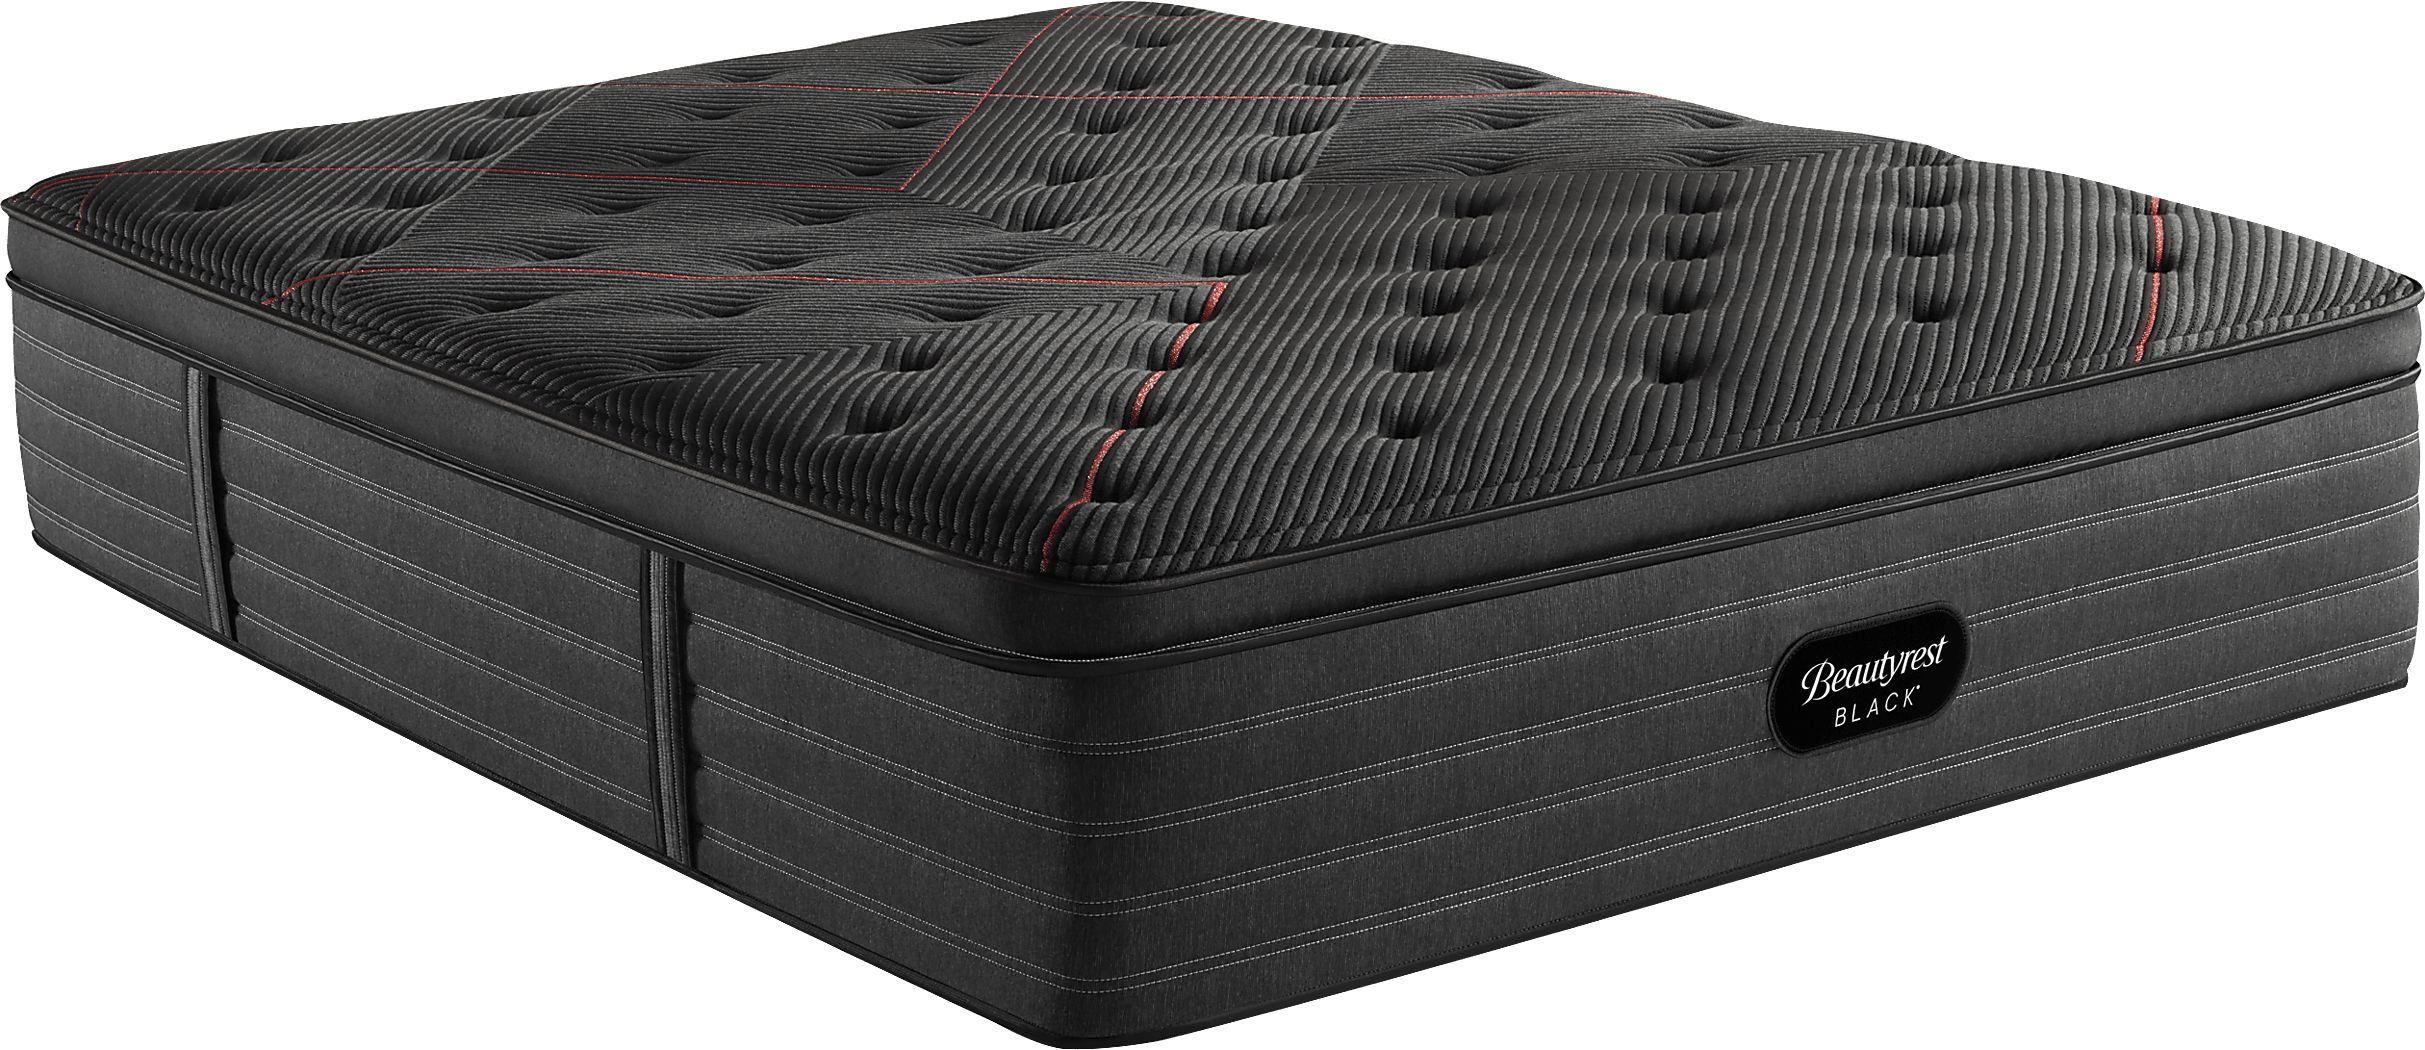 beautyrest black l-class plush mattress reviews